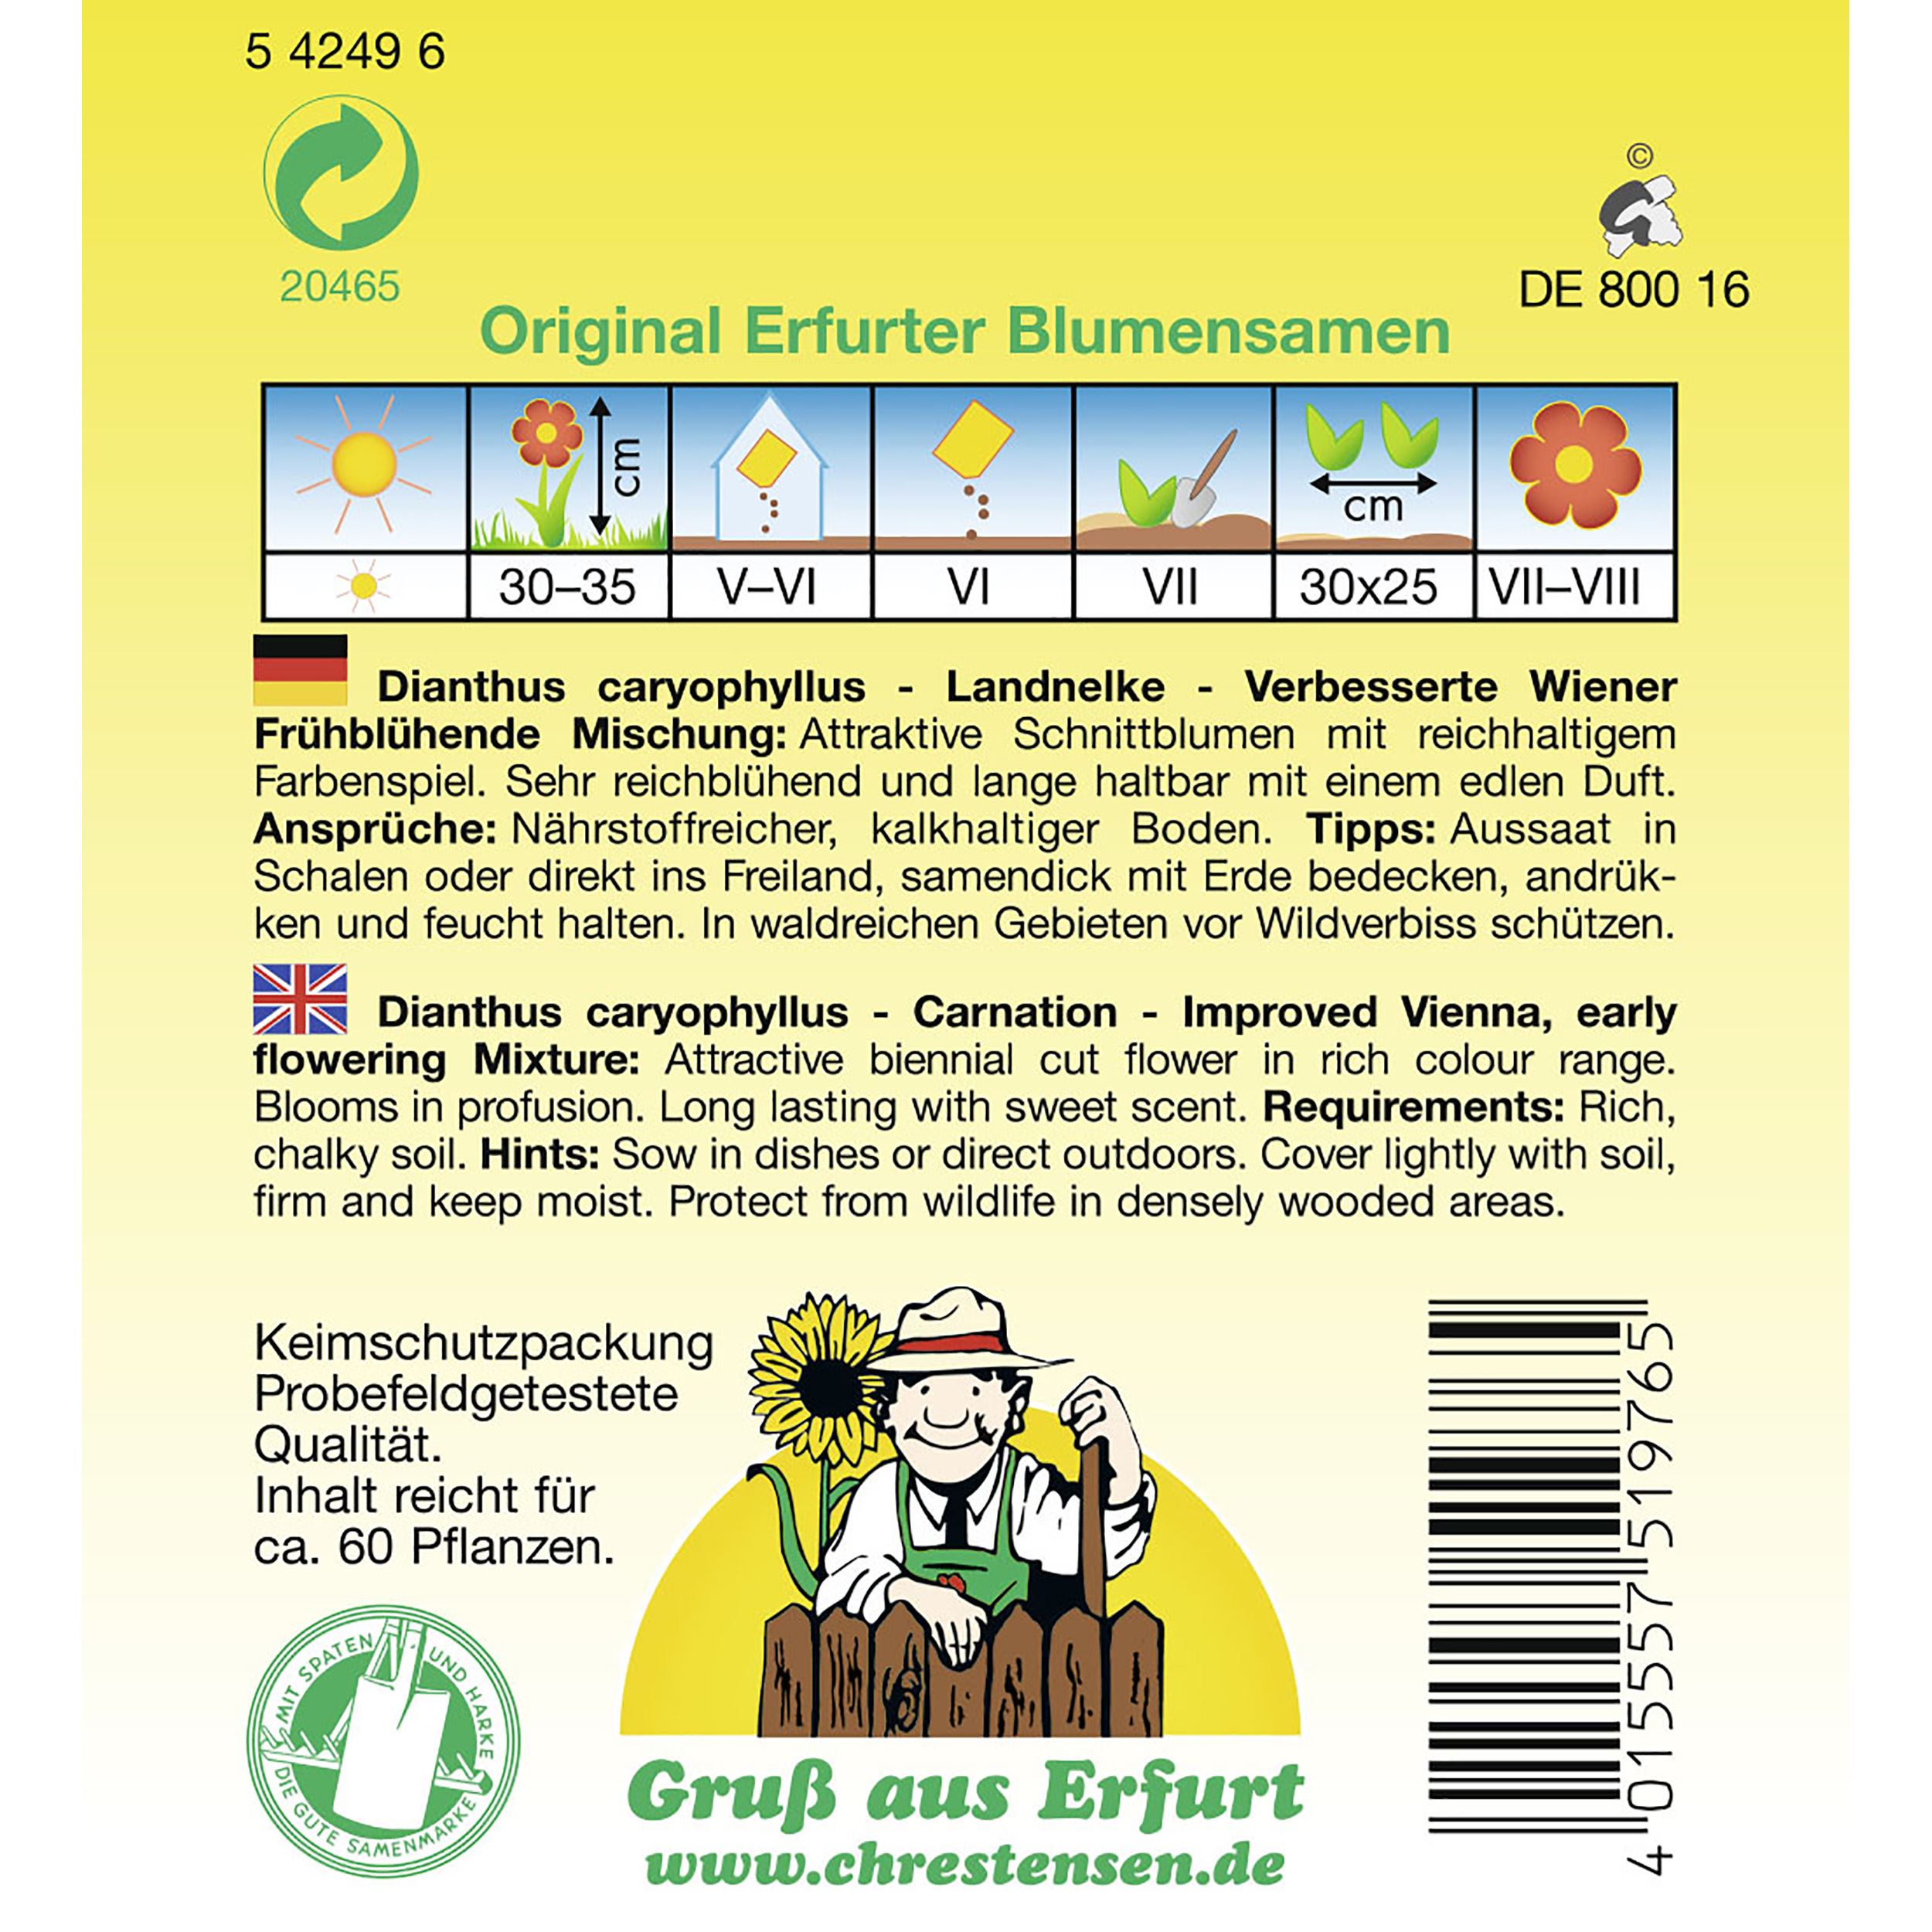 Dianthus, Gefüllte Landnelken, Verbesserte Wiener Frühblühende Mischung